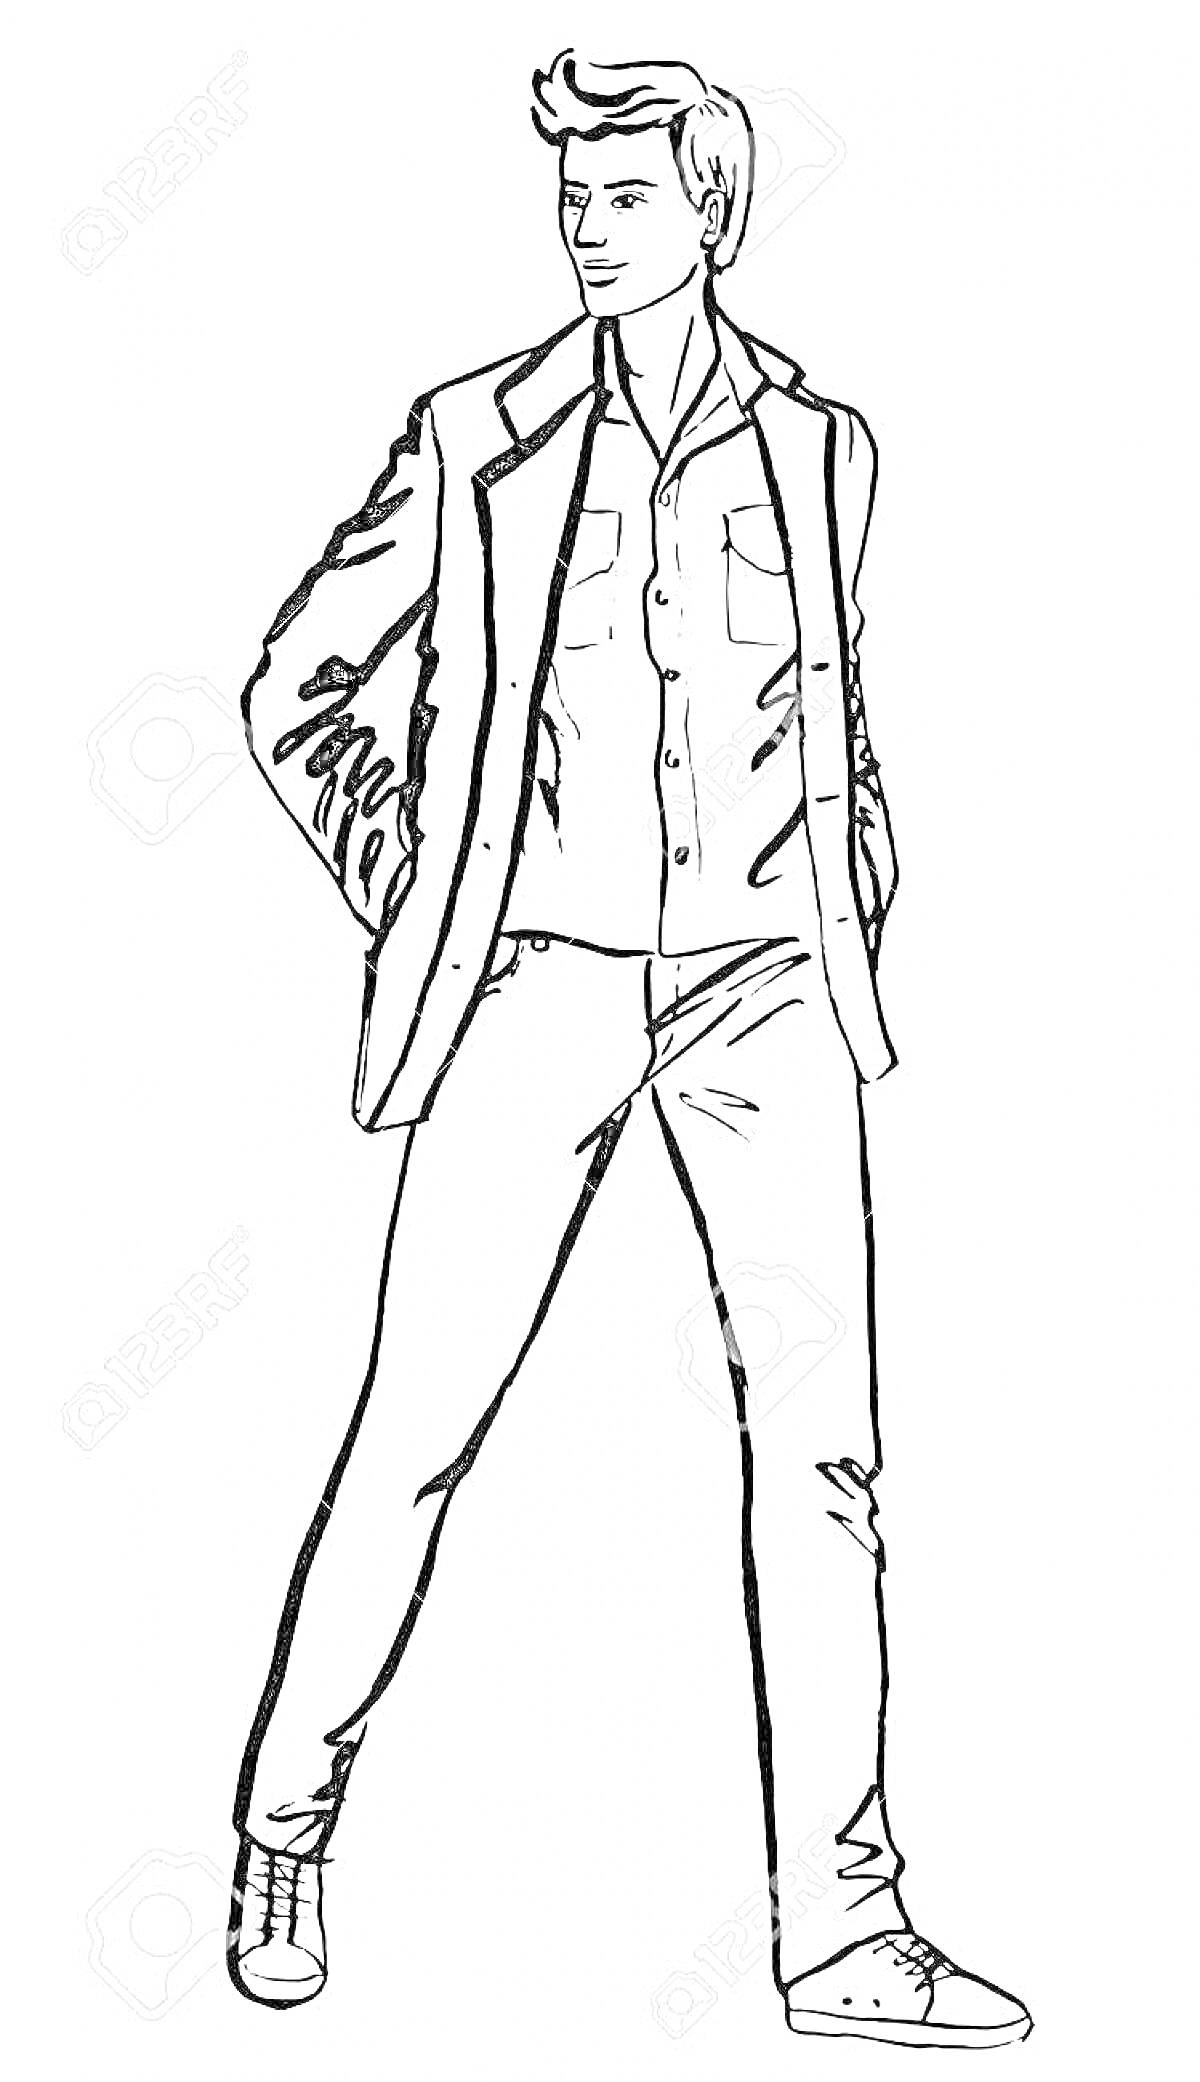 Раскраска Мужчина в пиджаке и рубашке, руки в карманах, обут в туфли